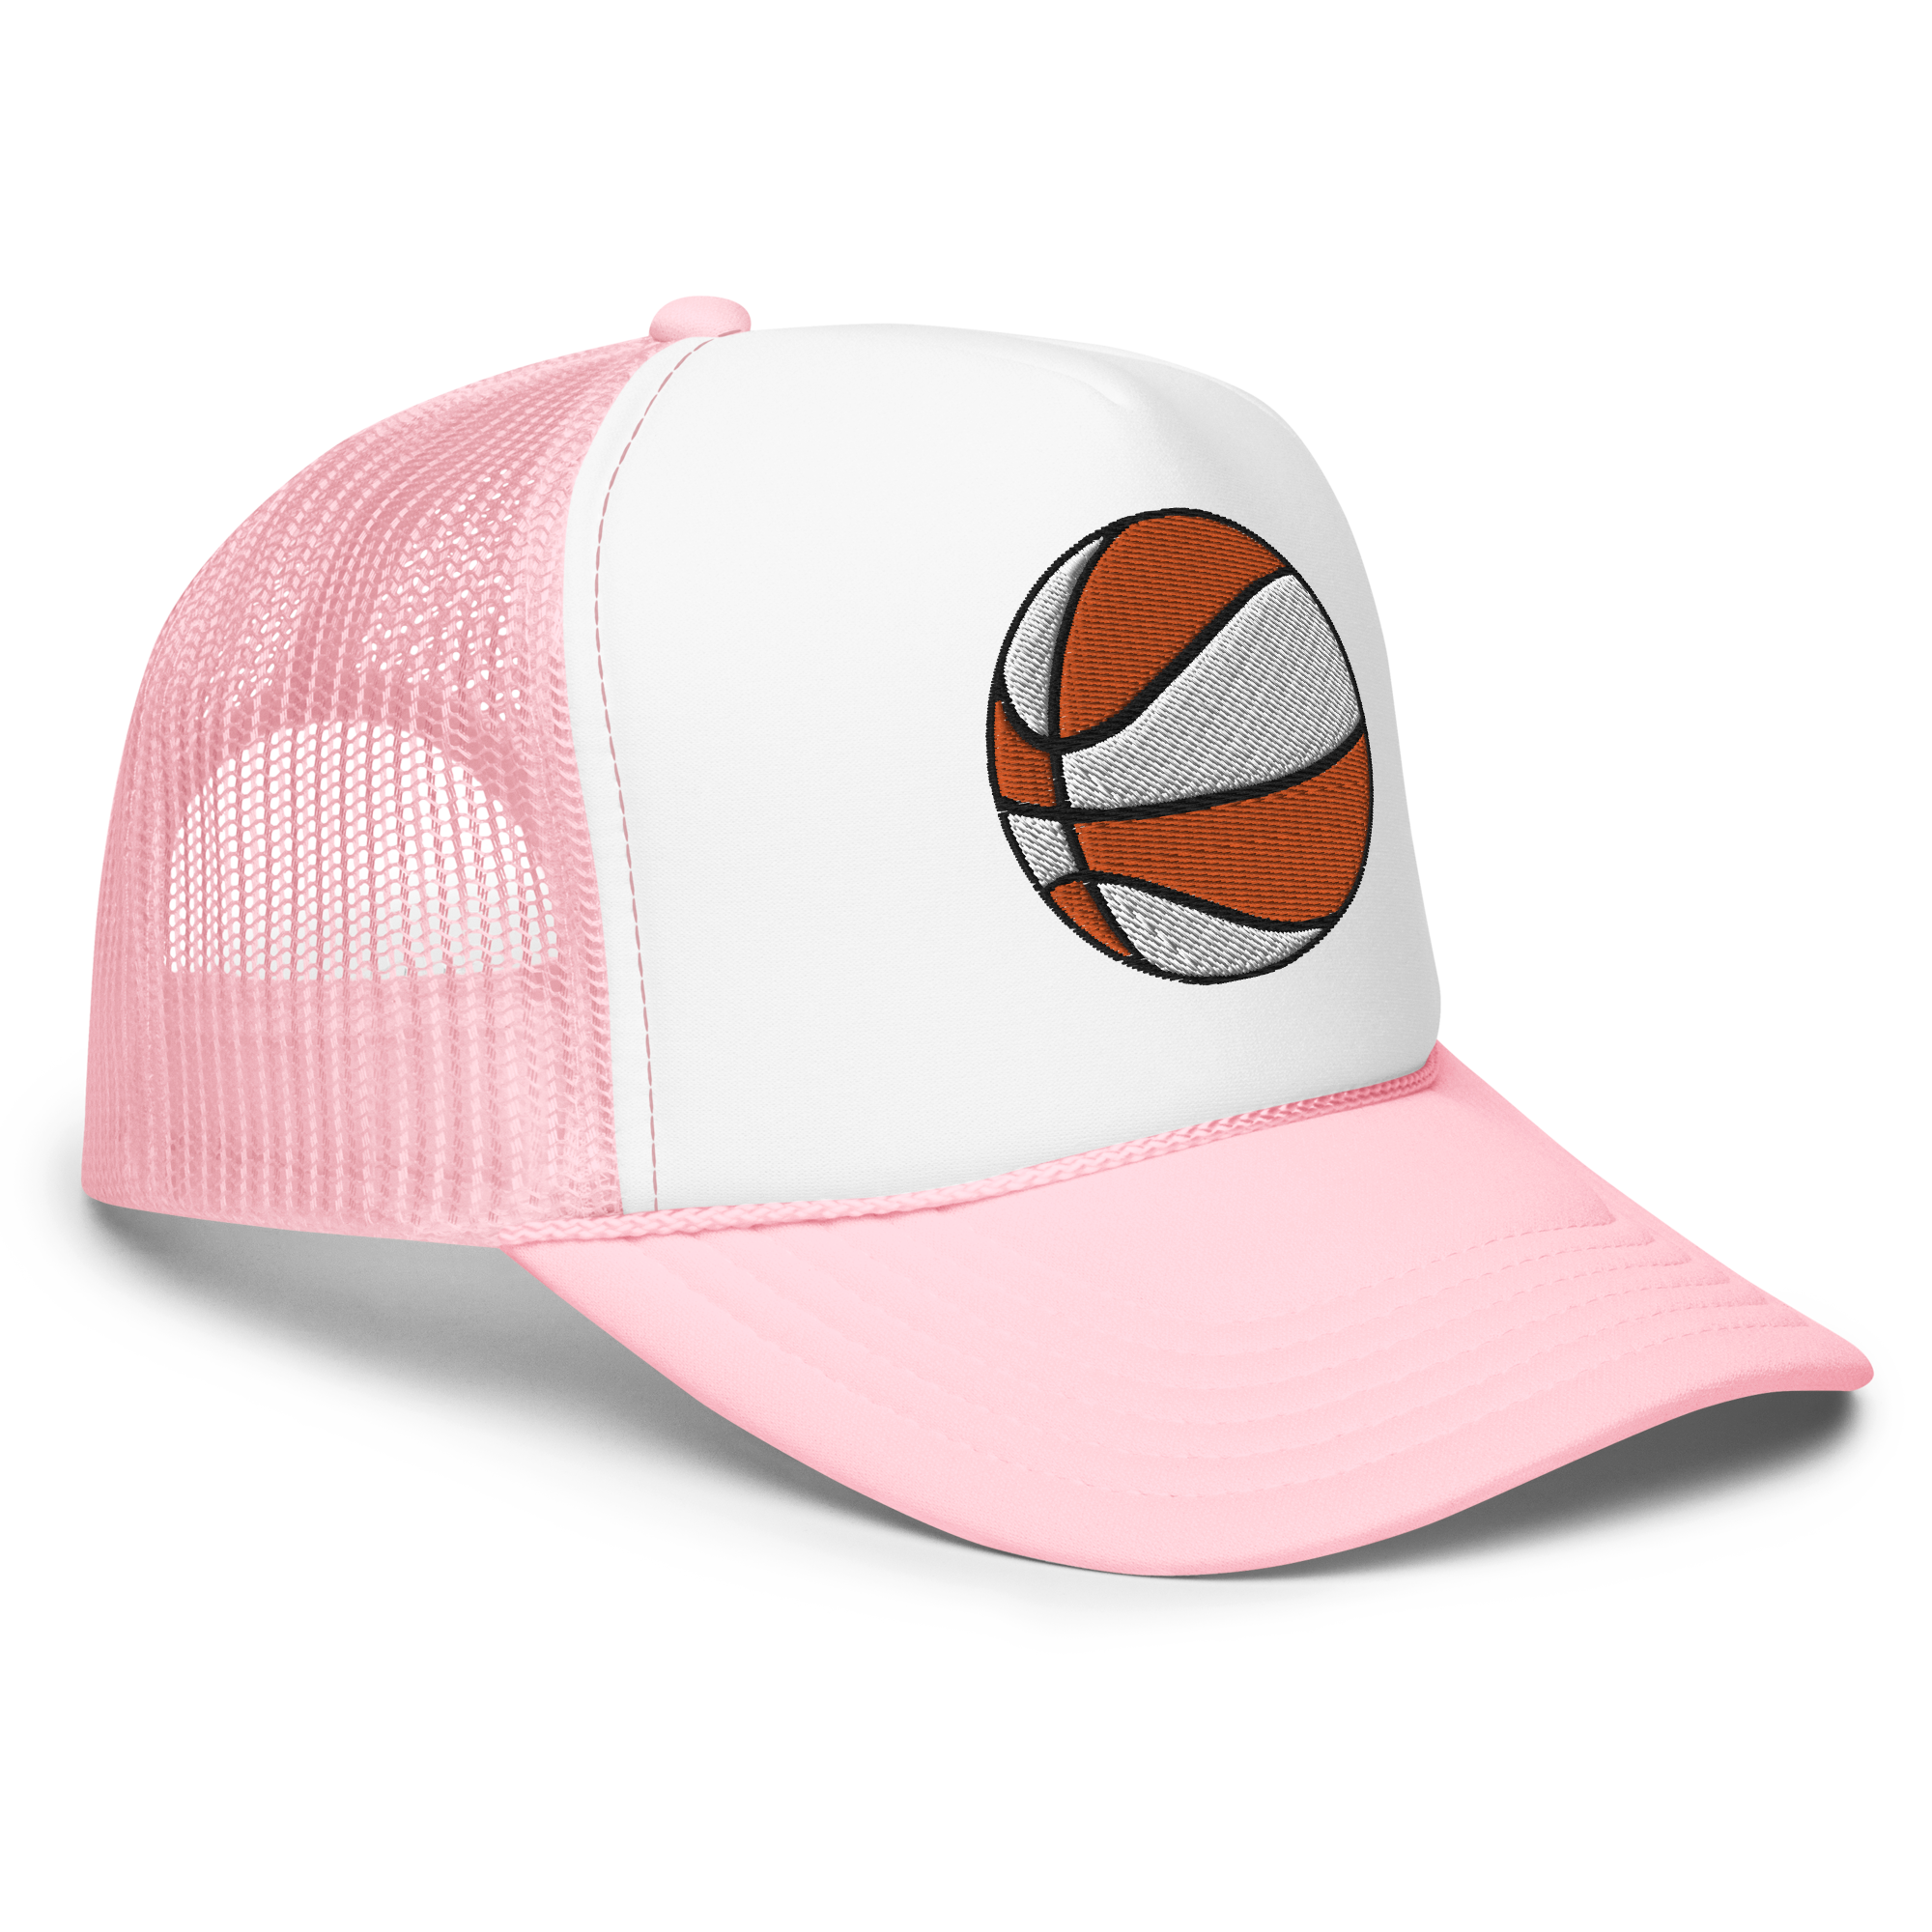 The Hoops Trucker Hat